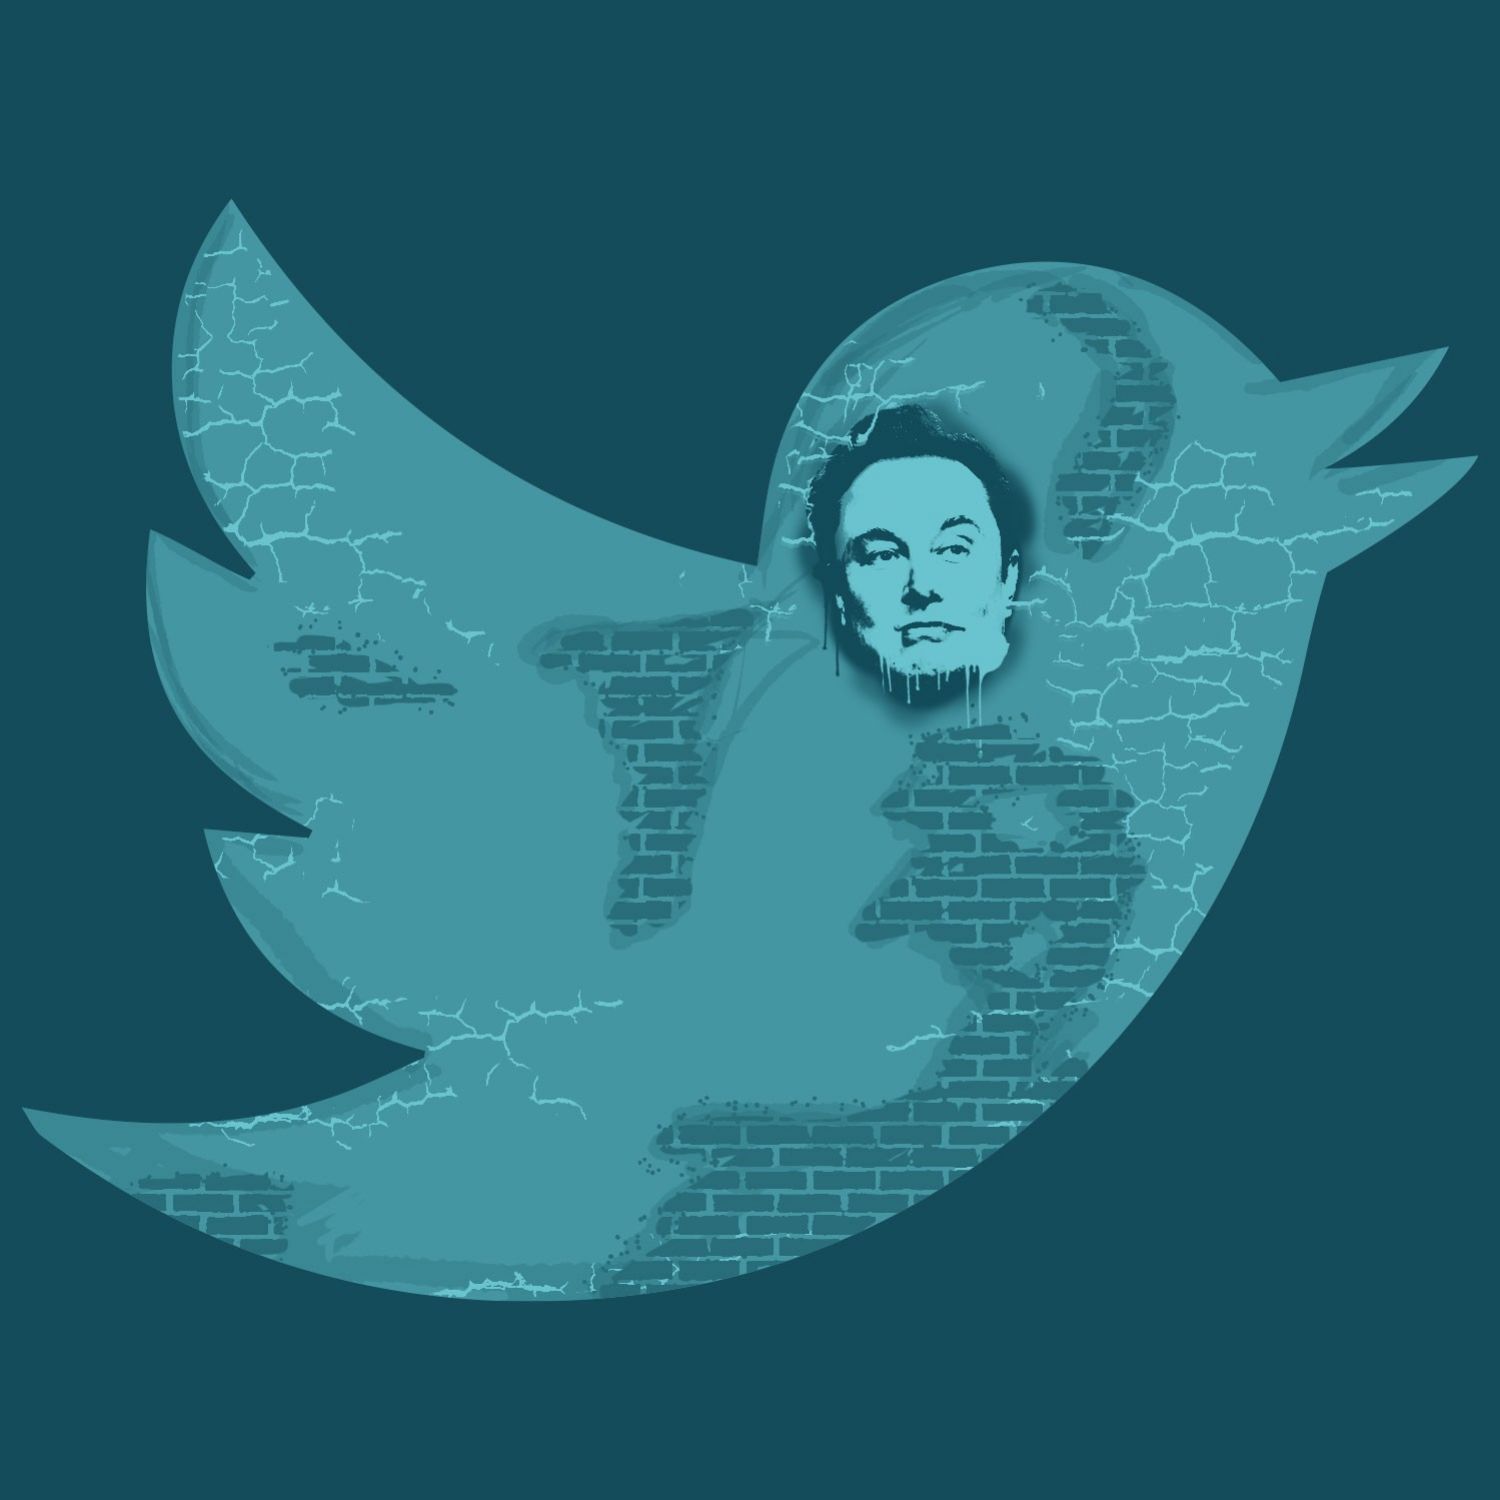 Twitter et autres réseaux sociaux - plumes libres